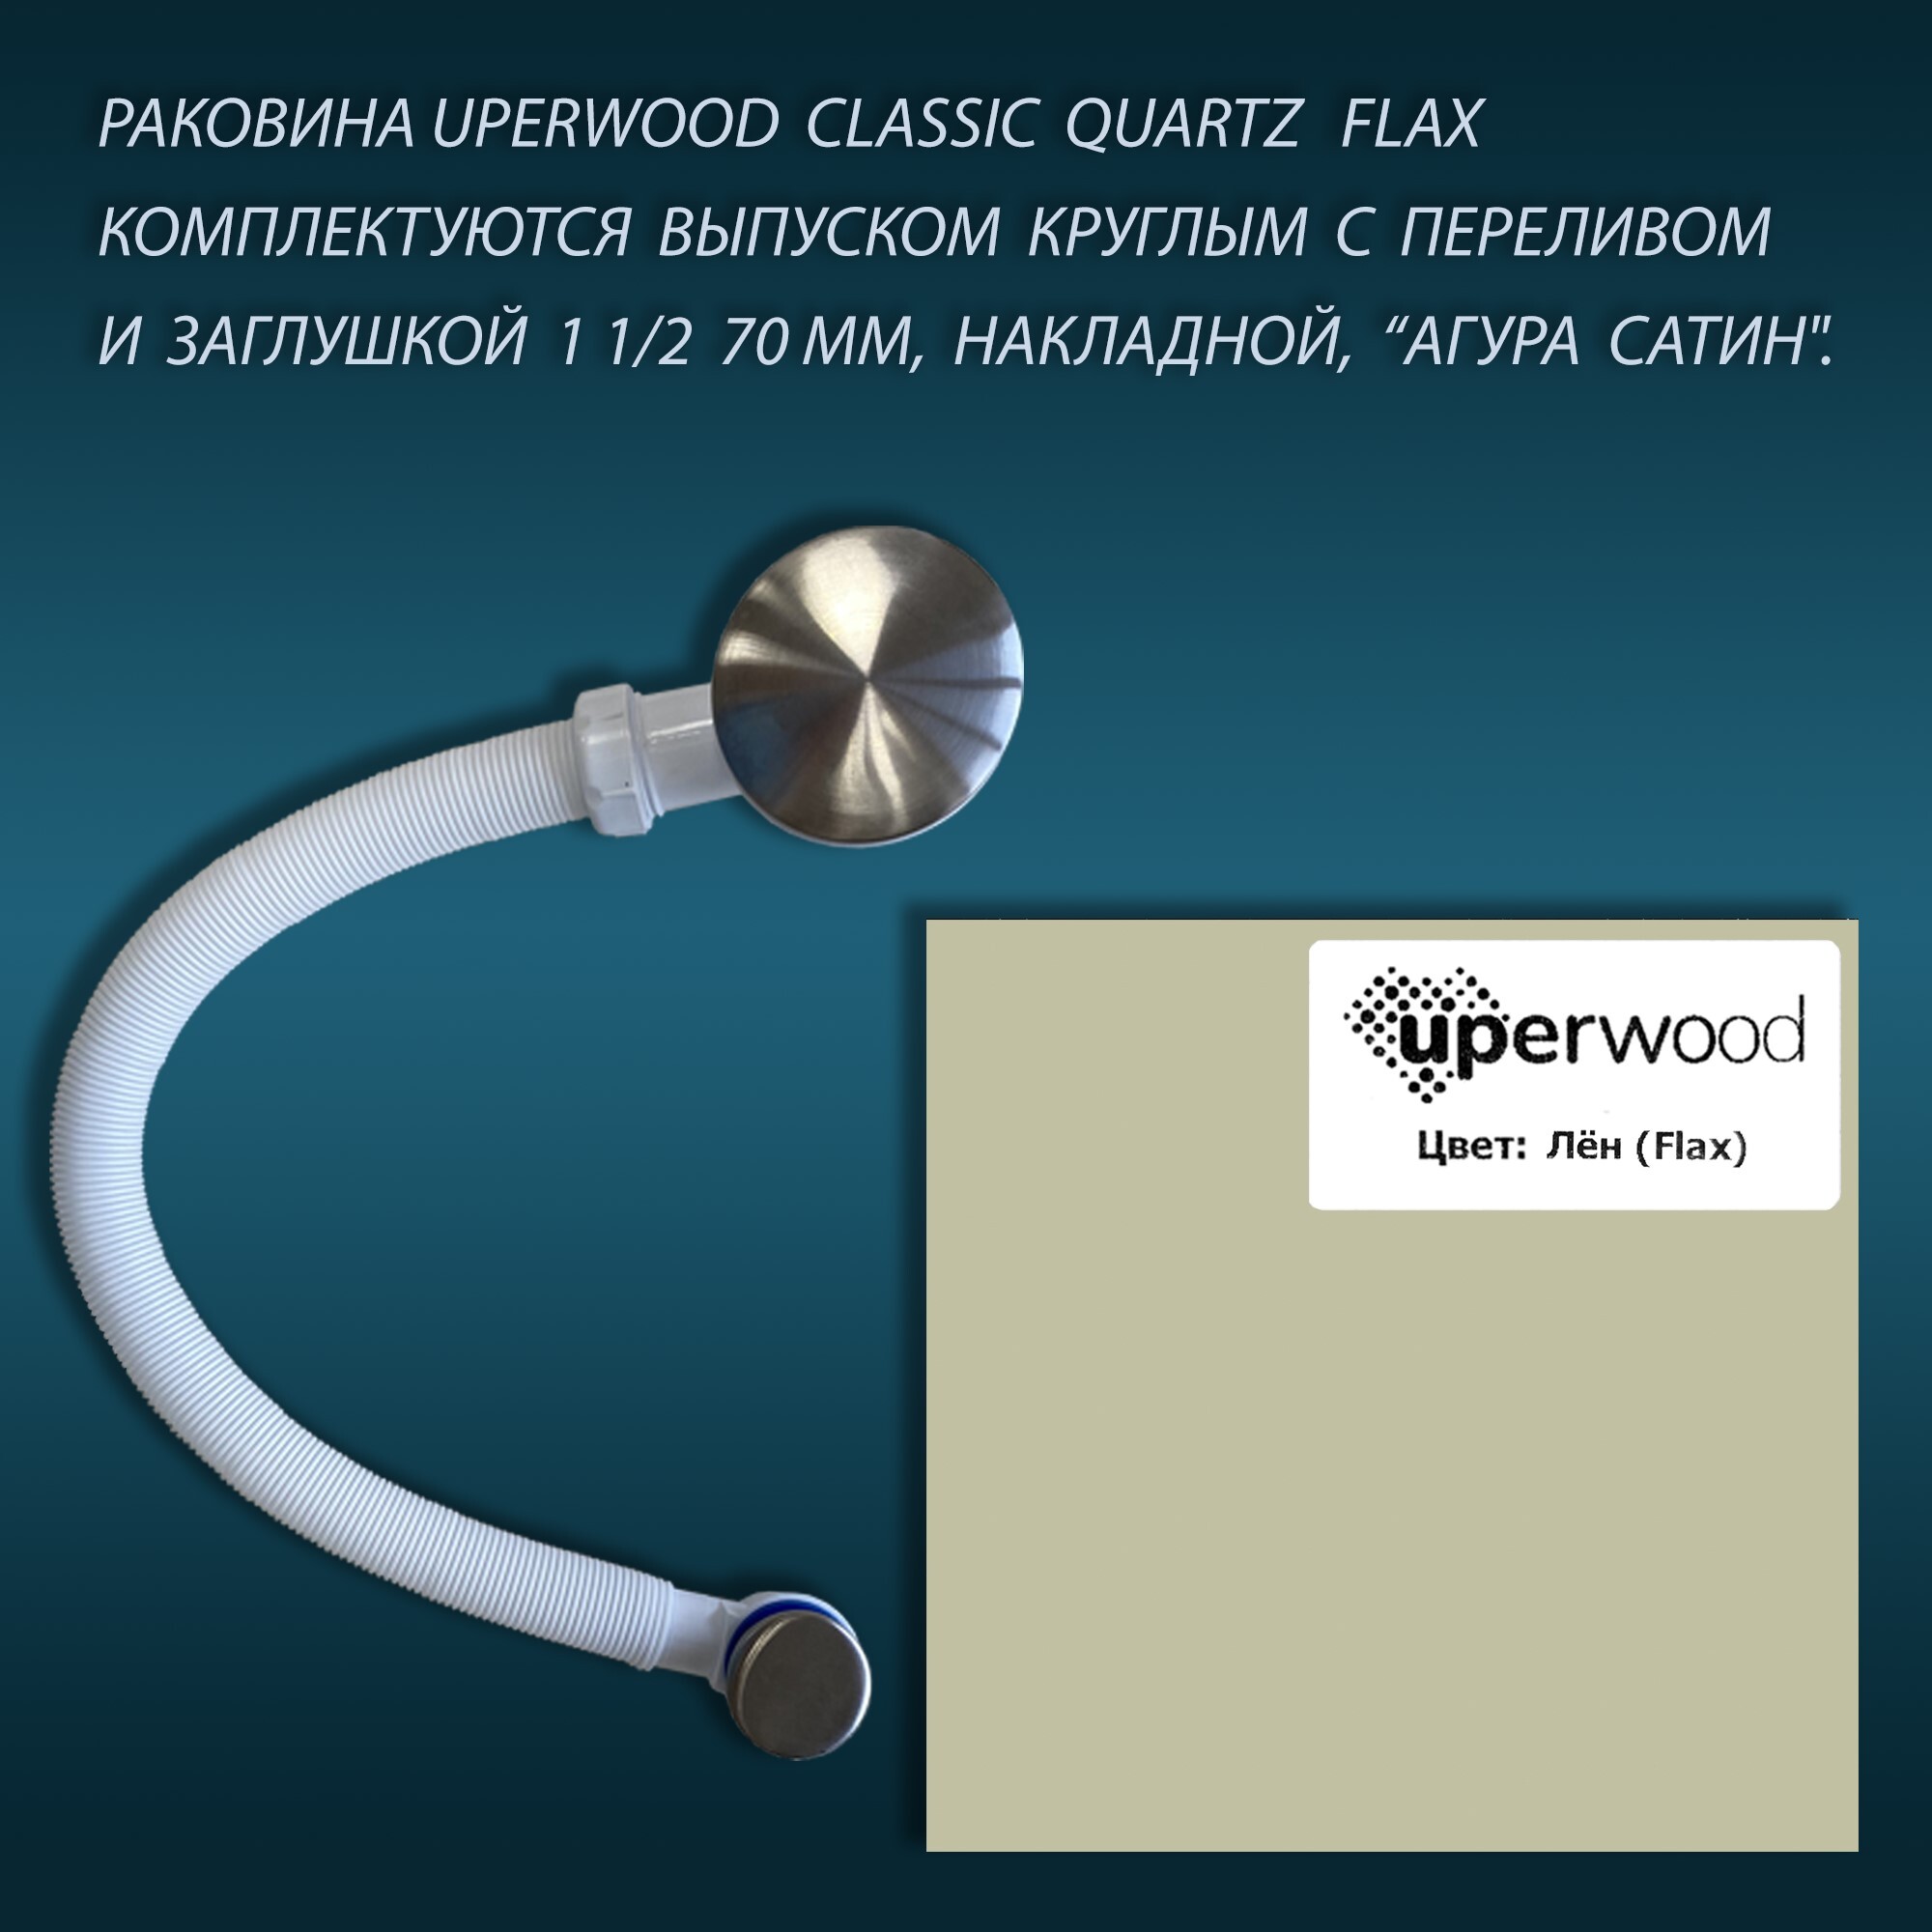 Раковина кварцевая Uperwood UPD Classic Quartz 70 см 291030019 бежевая, цвет бежевый - фото 7